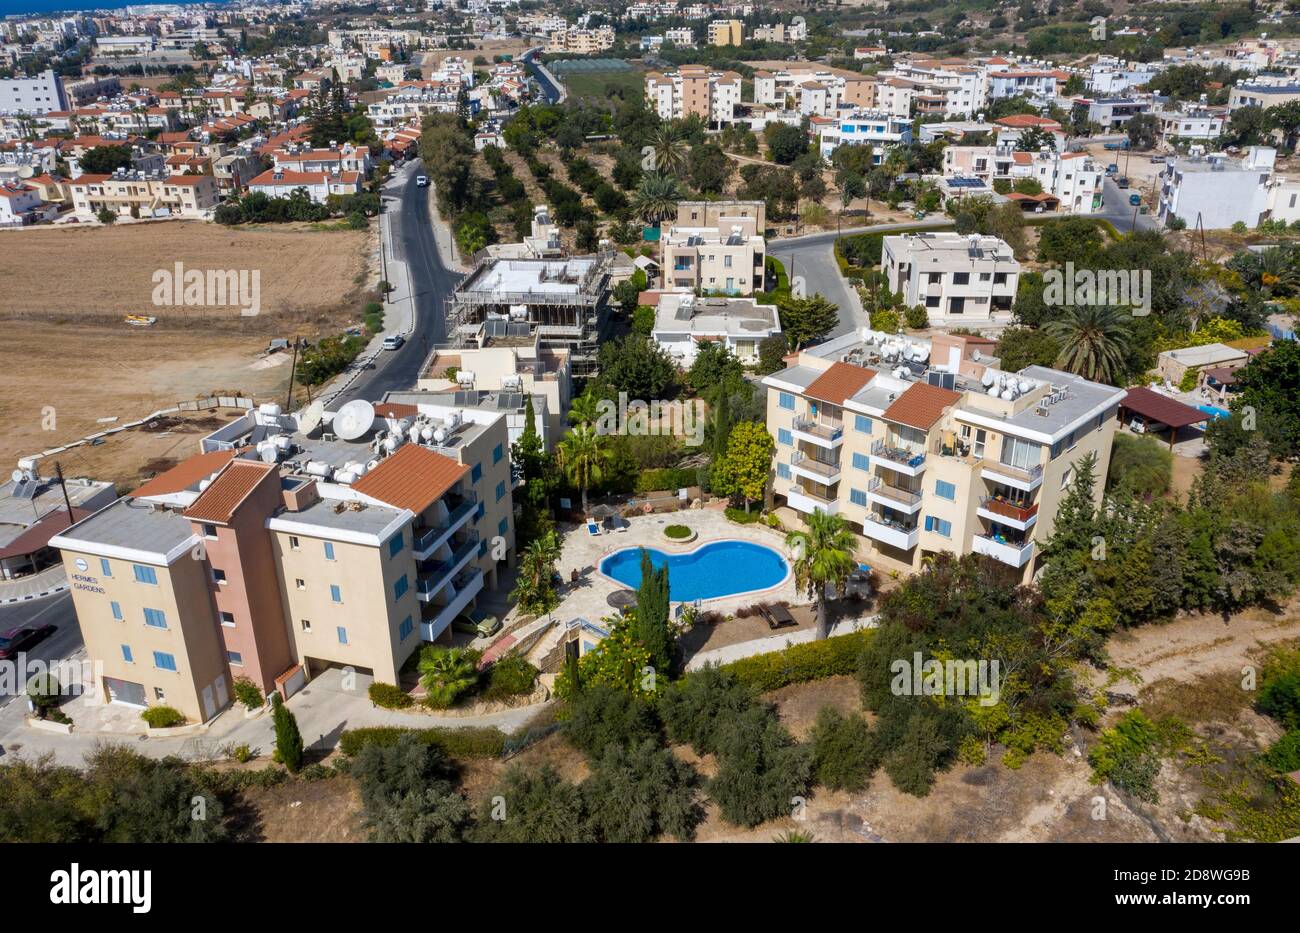 Vista aerea degli appartamenti Hermes Gardens, Kato Pervolian, Paphos, Cipro. Gli appartamenti sono un tipico esempio di appartamenti in affitto a Cipro. Foto Stock